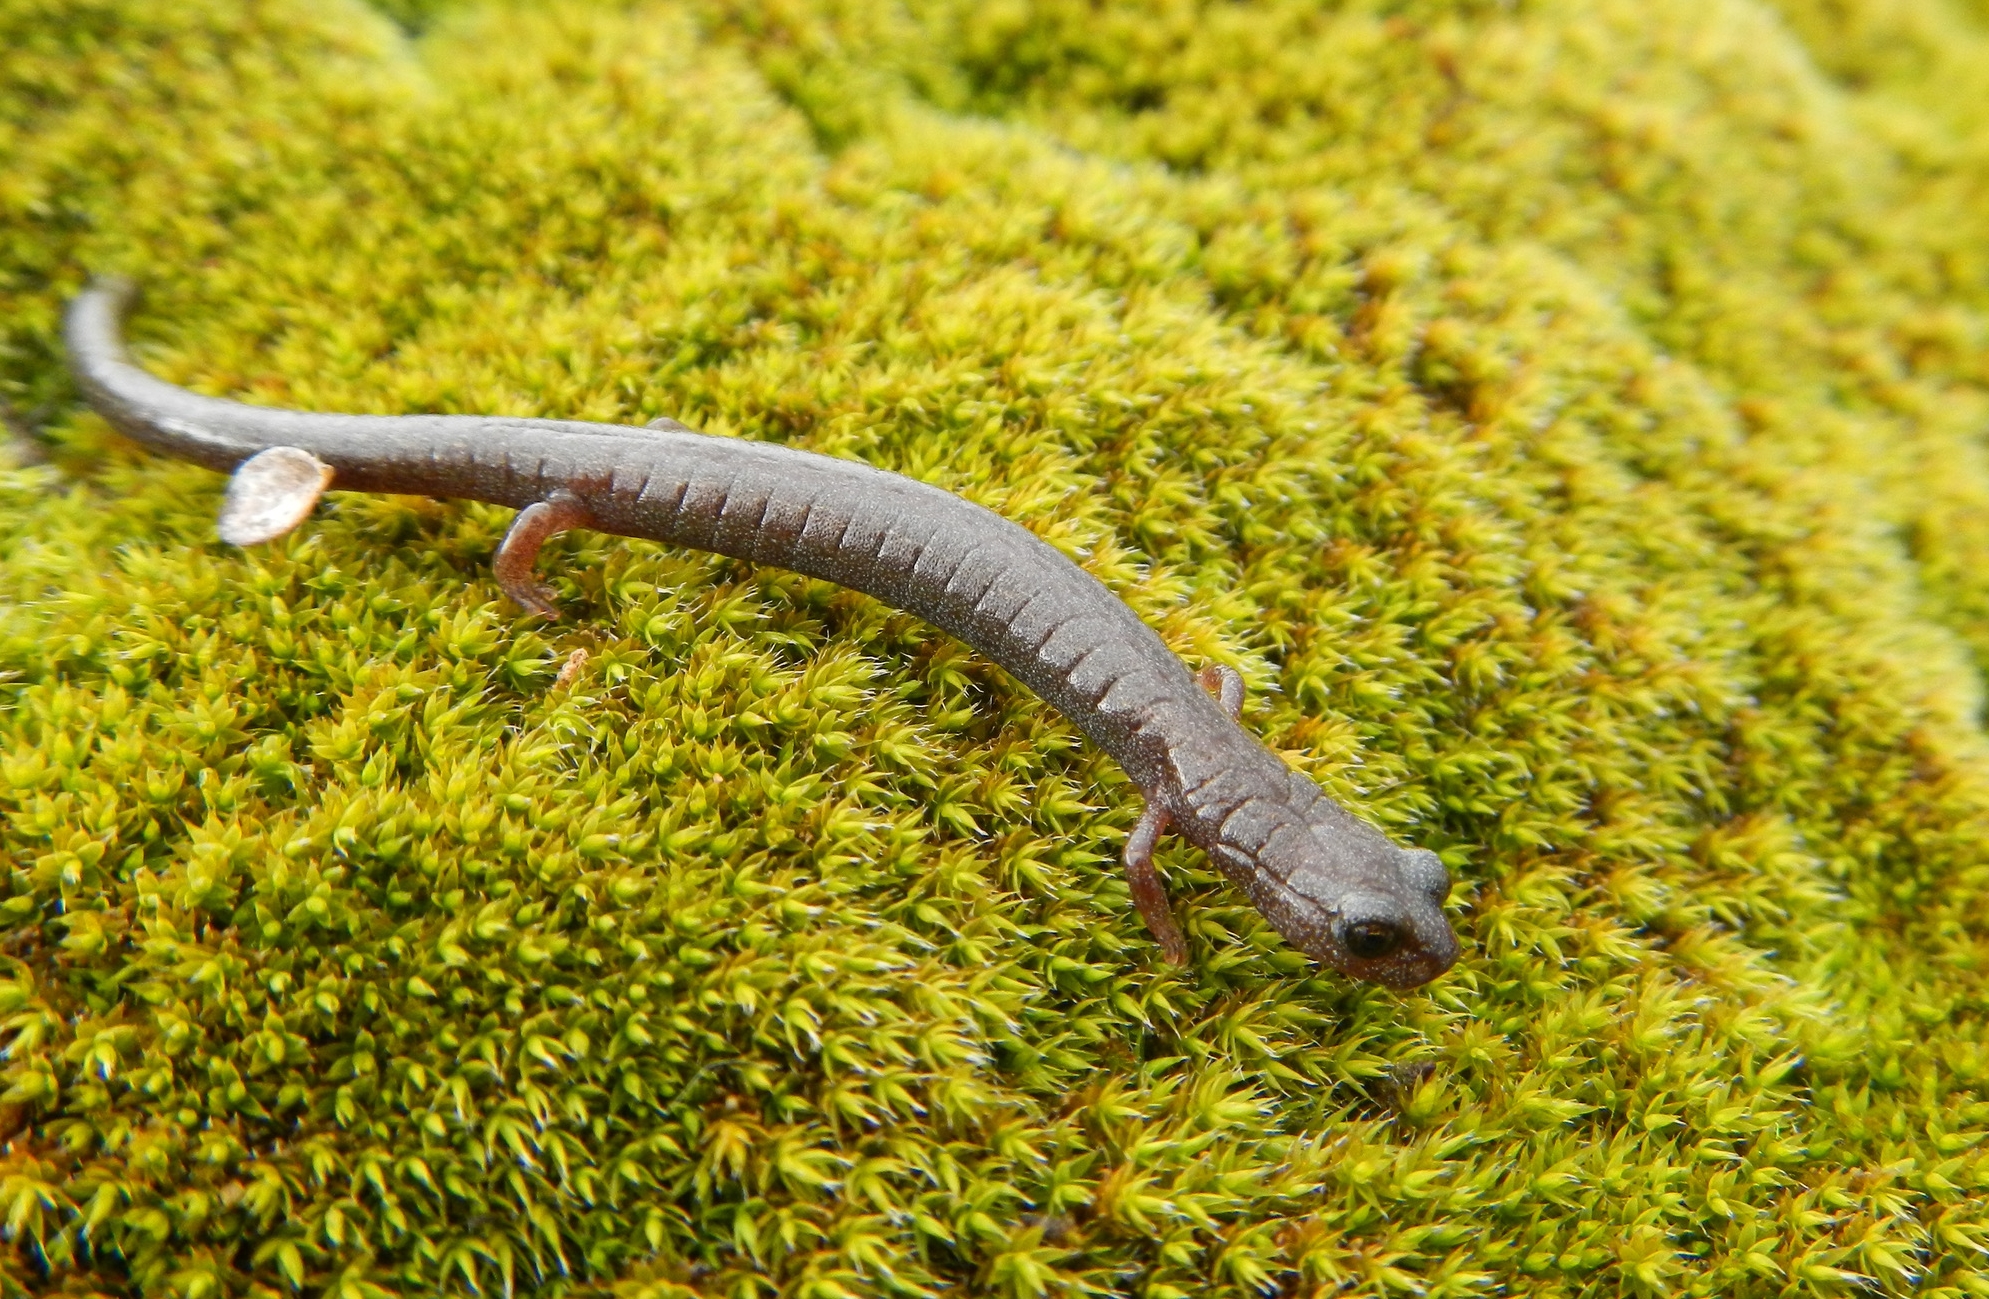 slender salamander